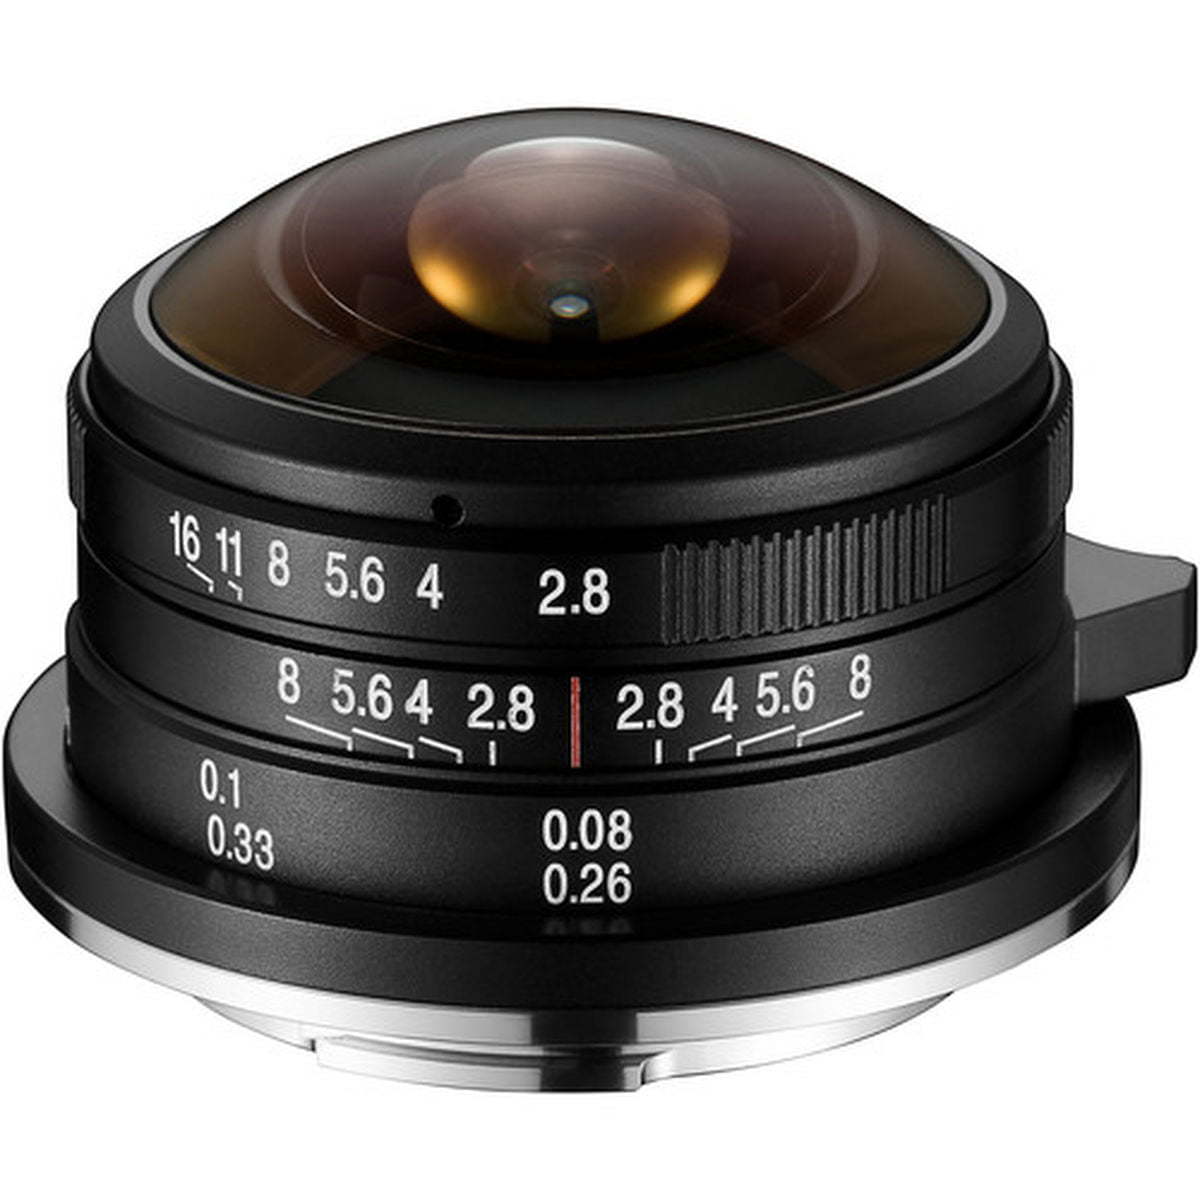 Laowa 4mm f/2.8 MFT Lens